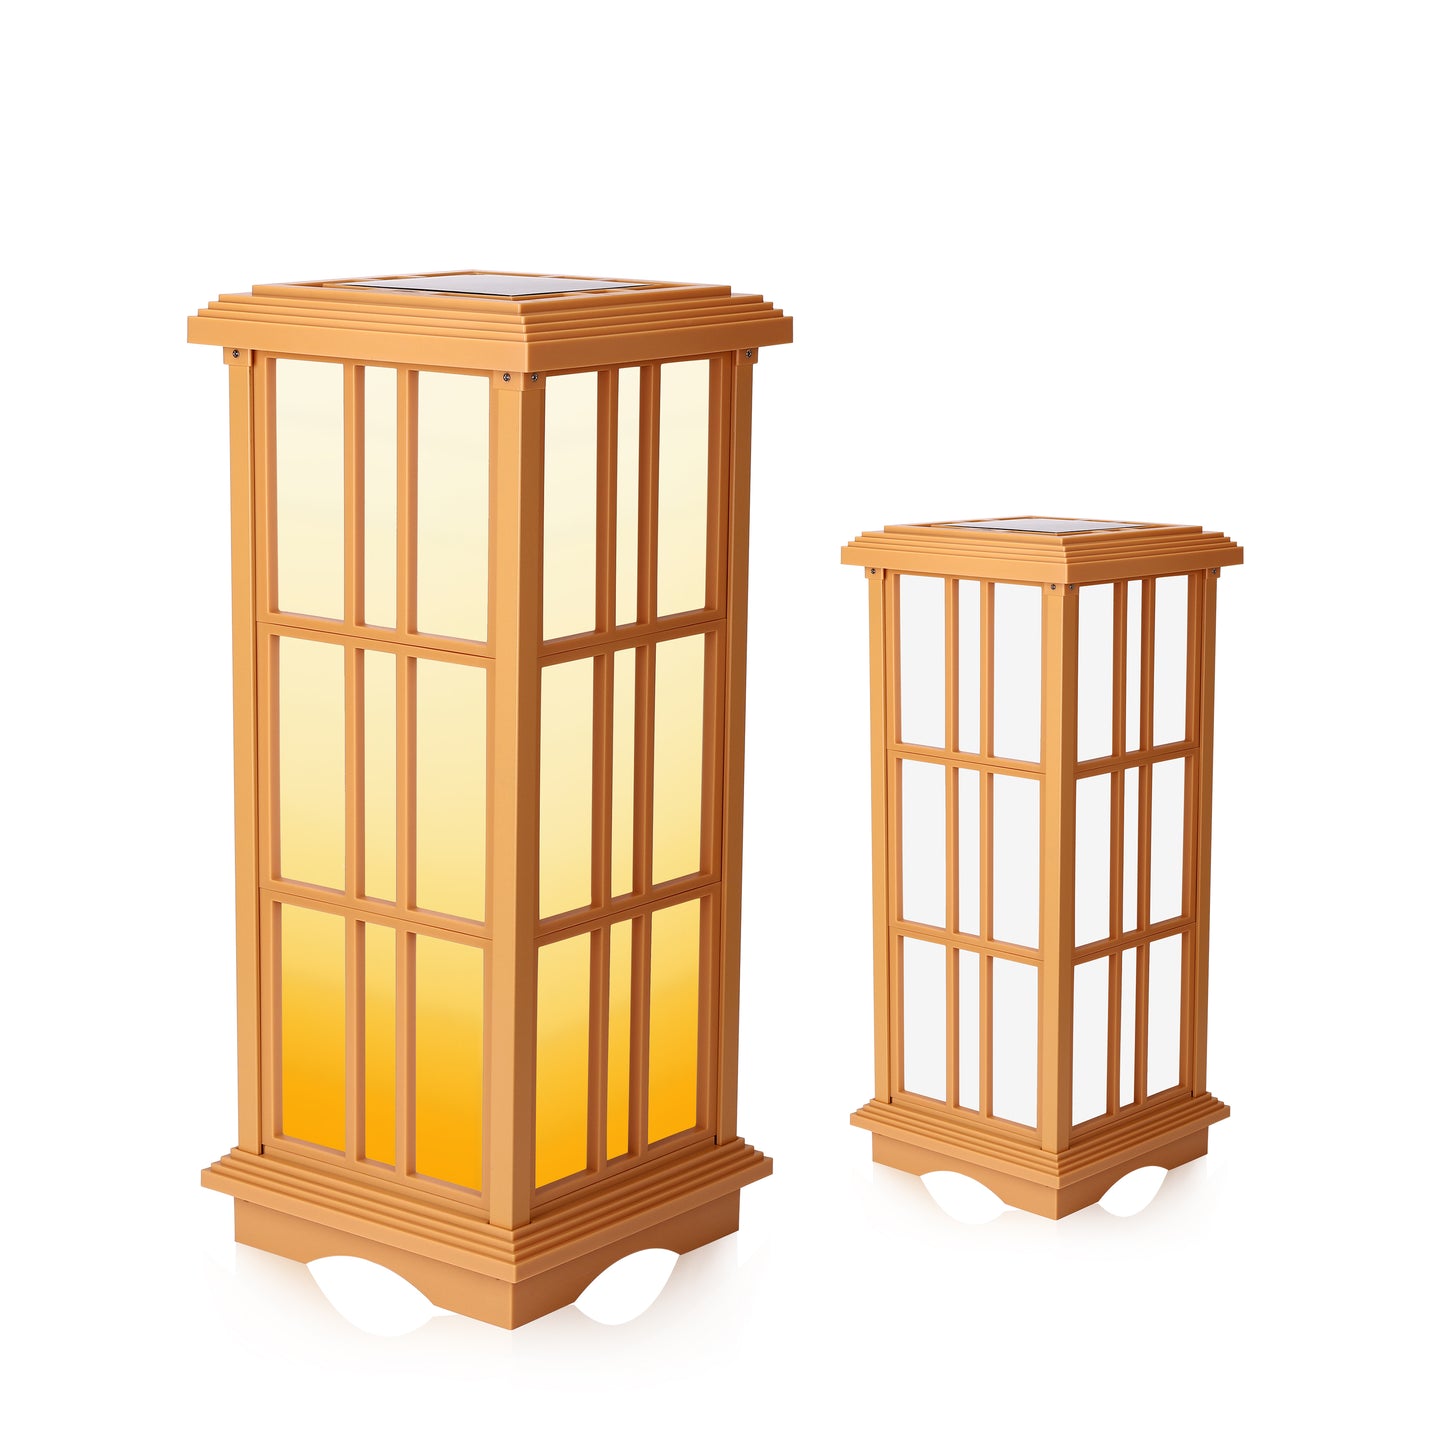 Solar Zen Lantern Minimalist Style (Medium)